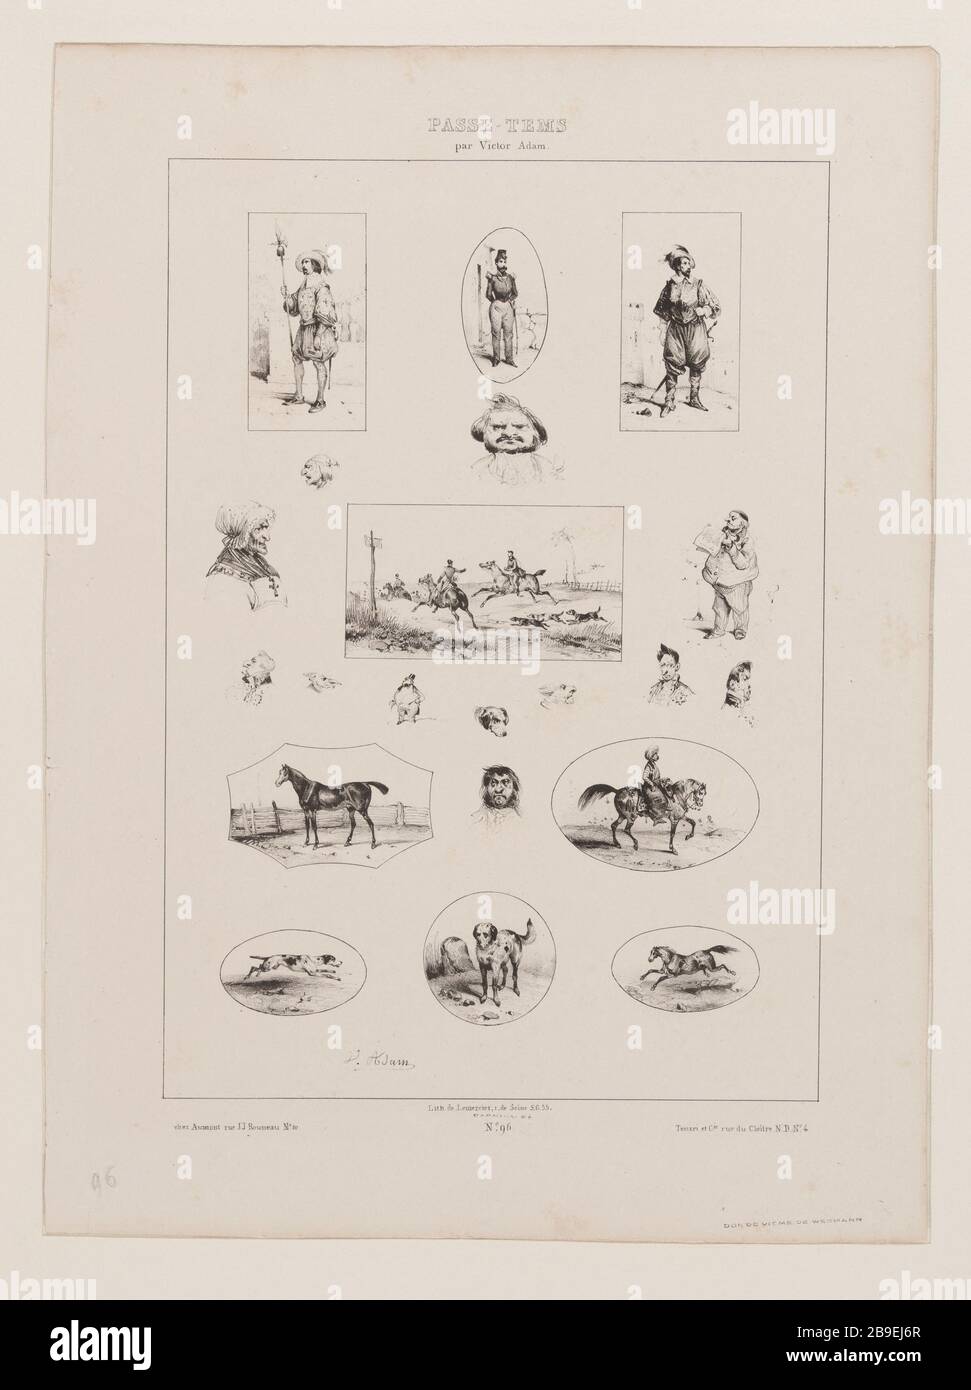 Album Hobbies (pl.96) Jean-Victor Adam, dit Victor Adam (1801-1866), peintre et lithographe français. Album 'Passe-Temps' (pl.96). Lithographie, XIXème siècle. Paris, musée Carnavalet. Stock Photo